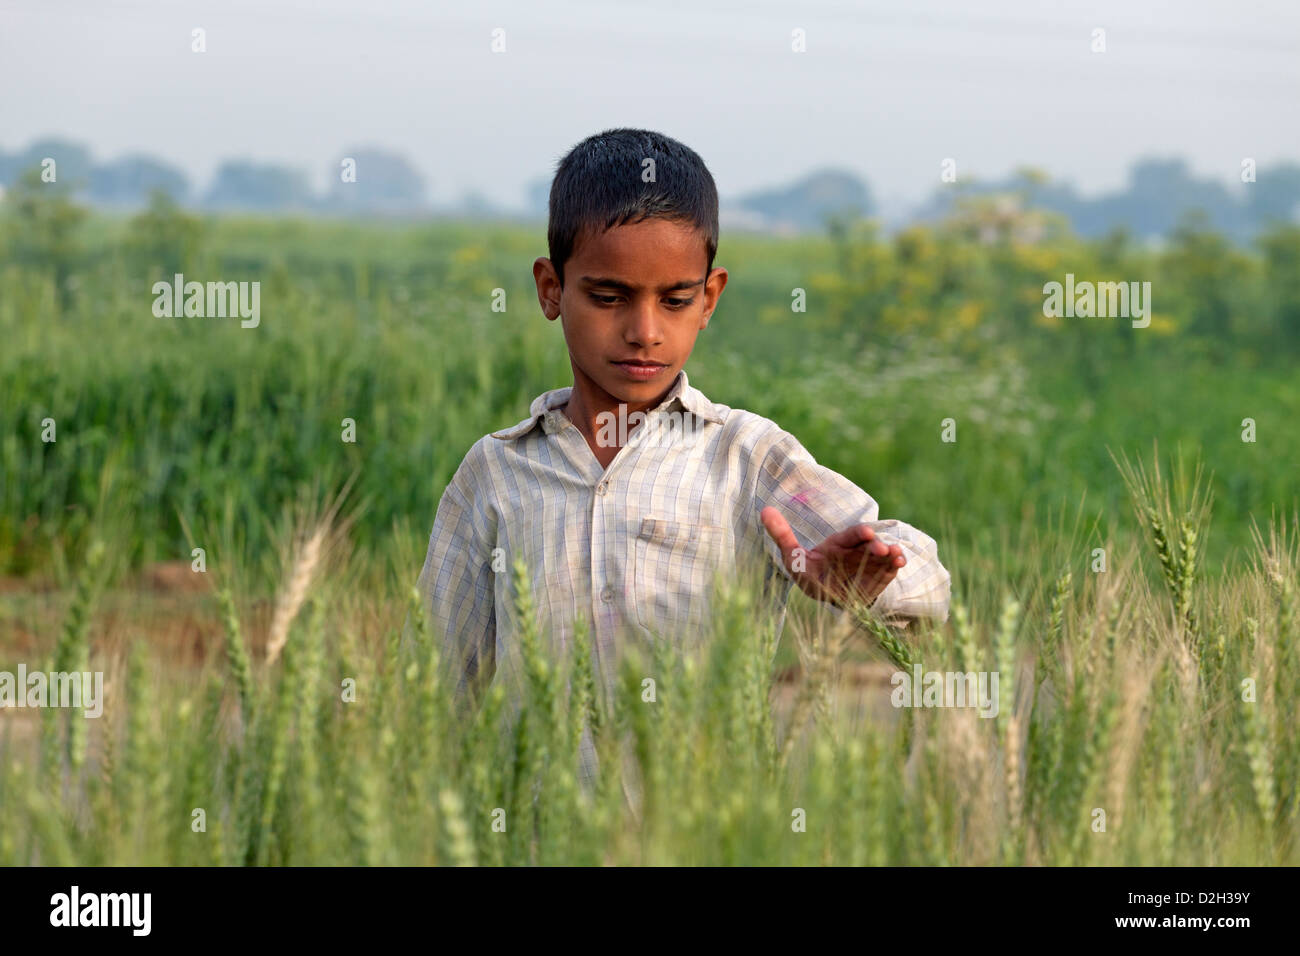 India, Uttar Pradesh, Agra, young child brushing his hand over wheat crop Stock Photo